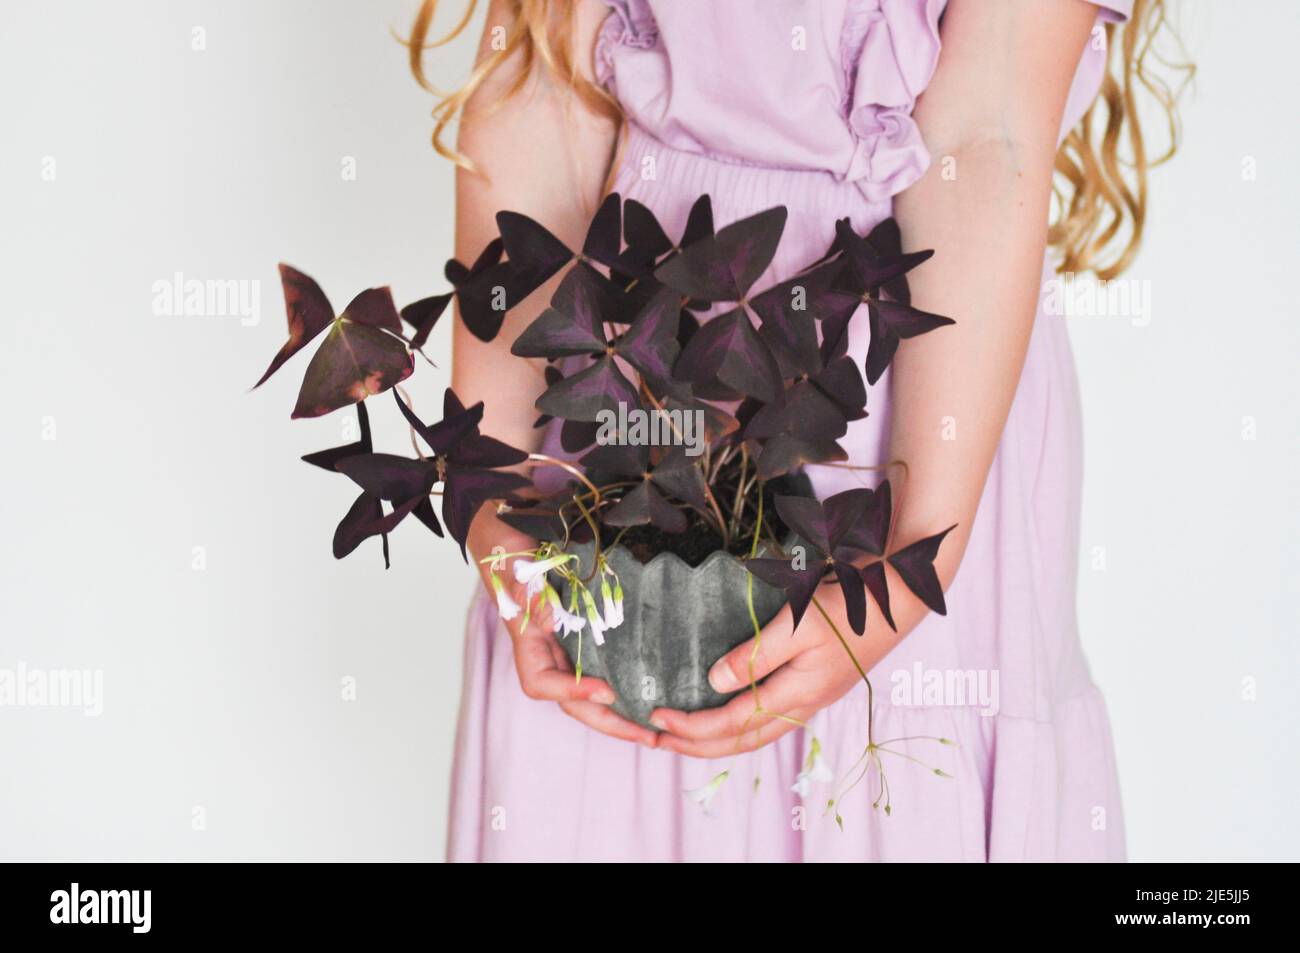 Une photo studio d'une jeune fille en robe violette tenant une plante en pot Oxalis triangularis sur fond blanc. Banque D'Images